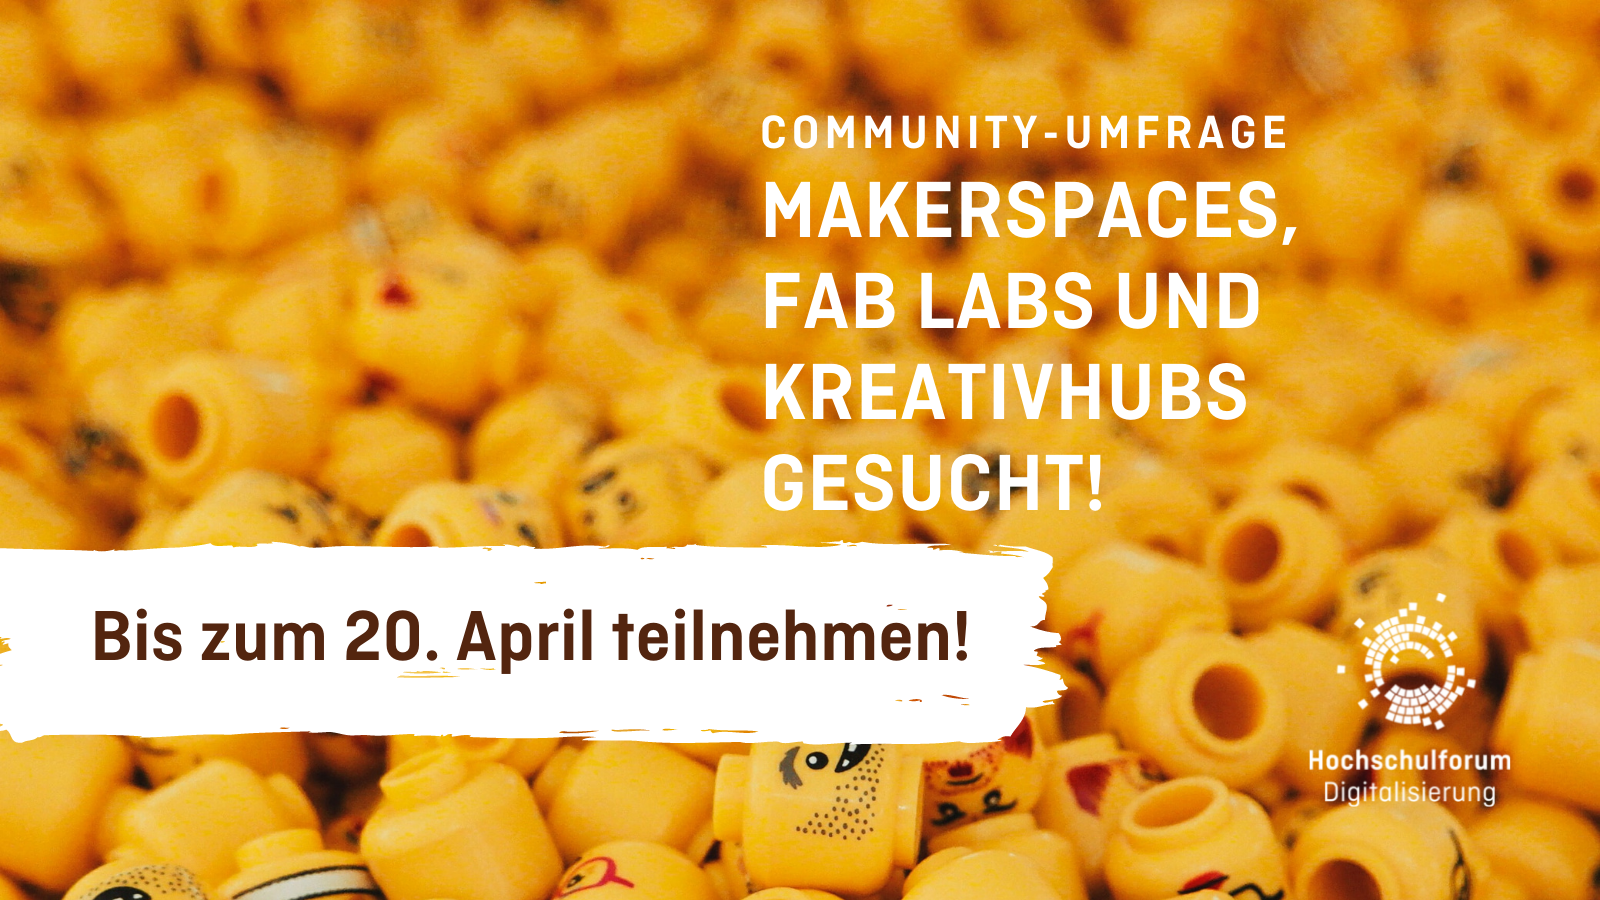 Bild im Hintergrund: einzelne gelbe Legofiguren-Köpfe; Text: Community-Umfrage; Makerspaces, Fab Labs und Kreativhubs gesucht!; Bis zum 20.04. teilnehmen!